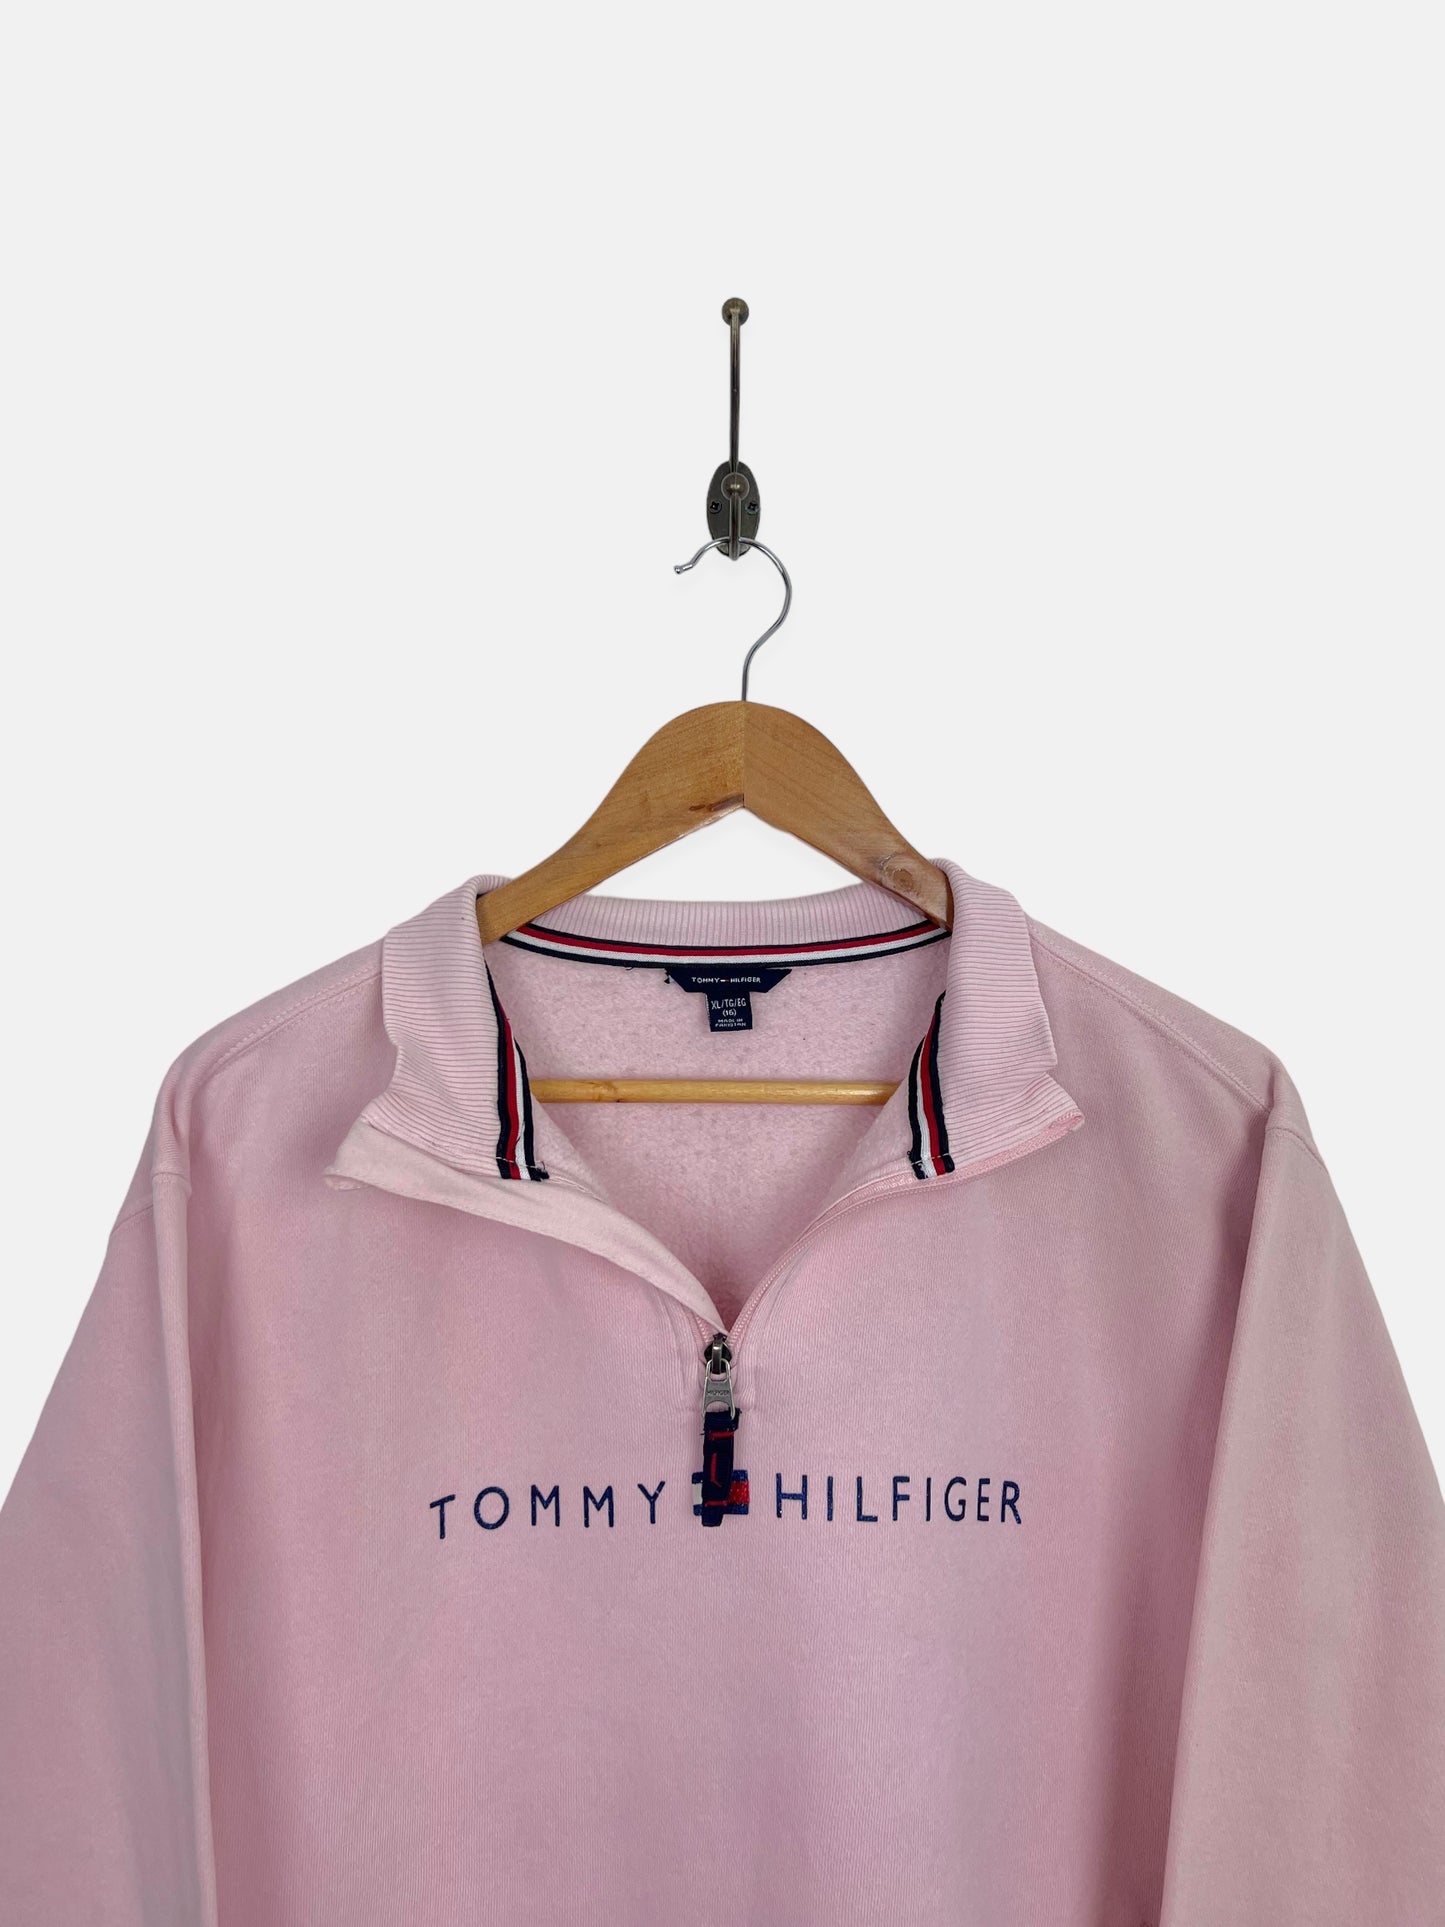 Tommy Hilfiger Vintage Quarterzip Sweatshirt Size 4-6